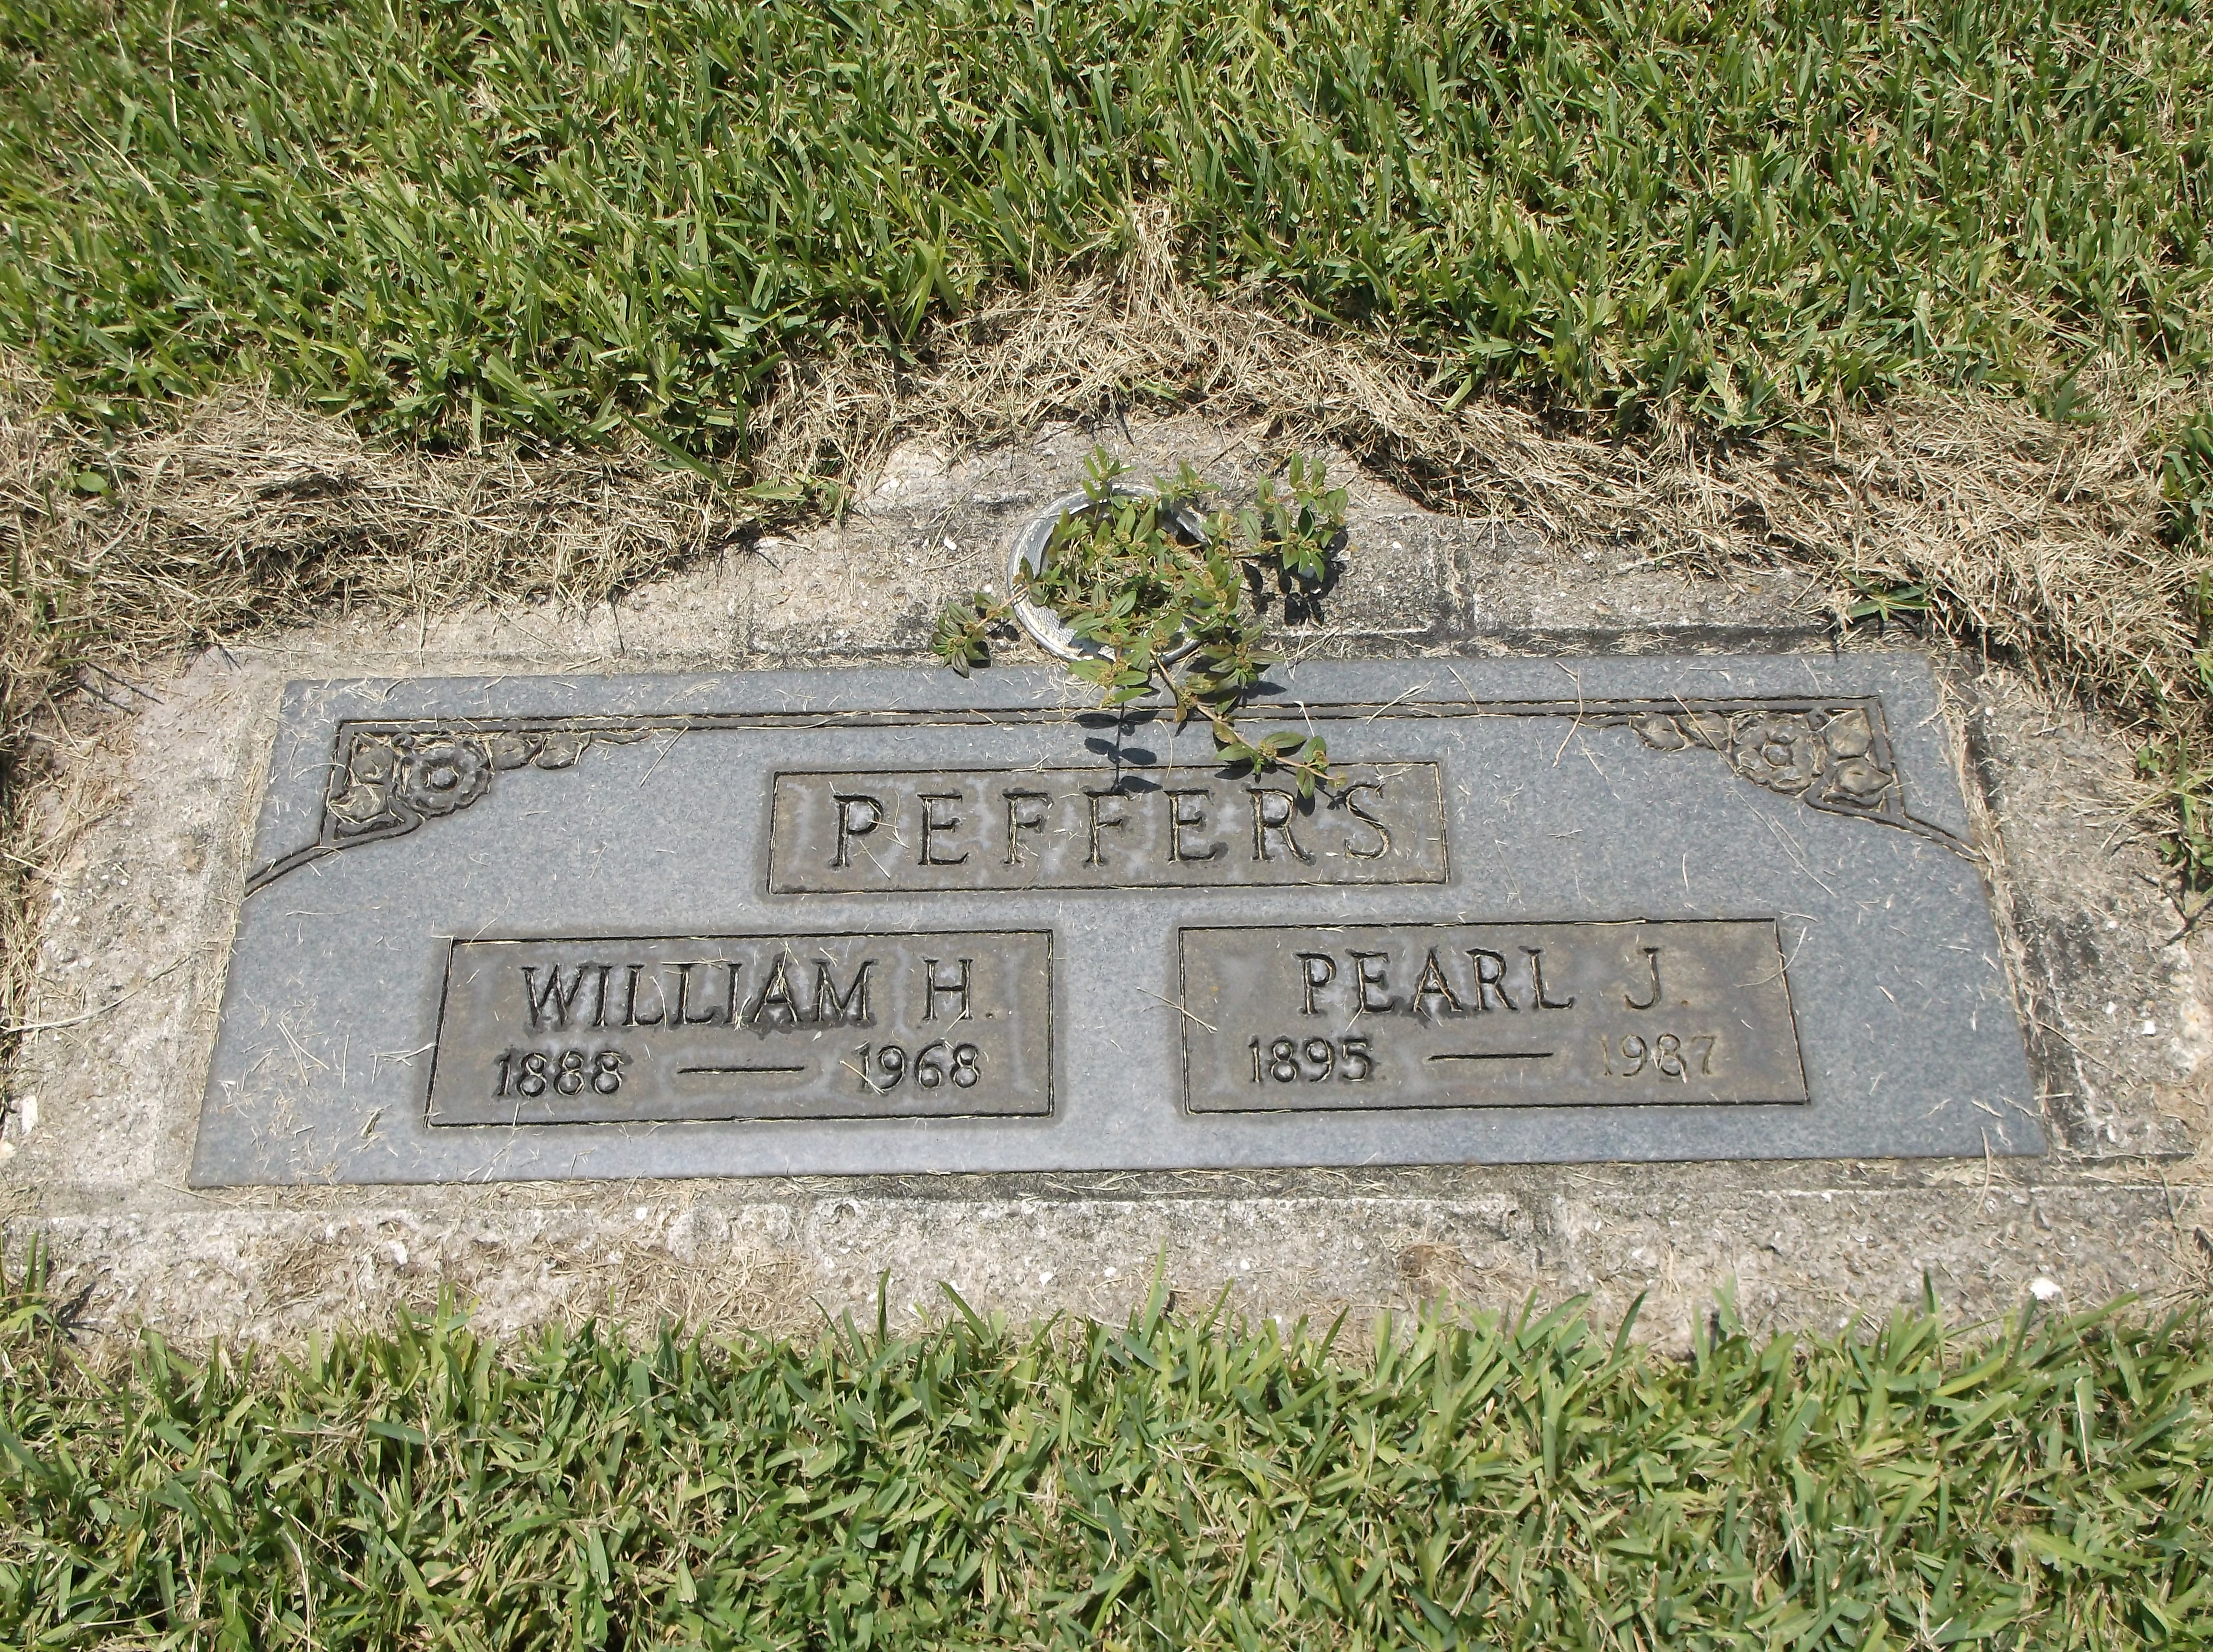 Pearl J Peffers